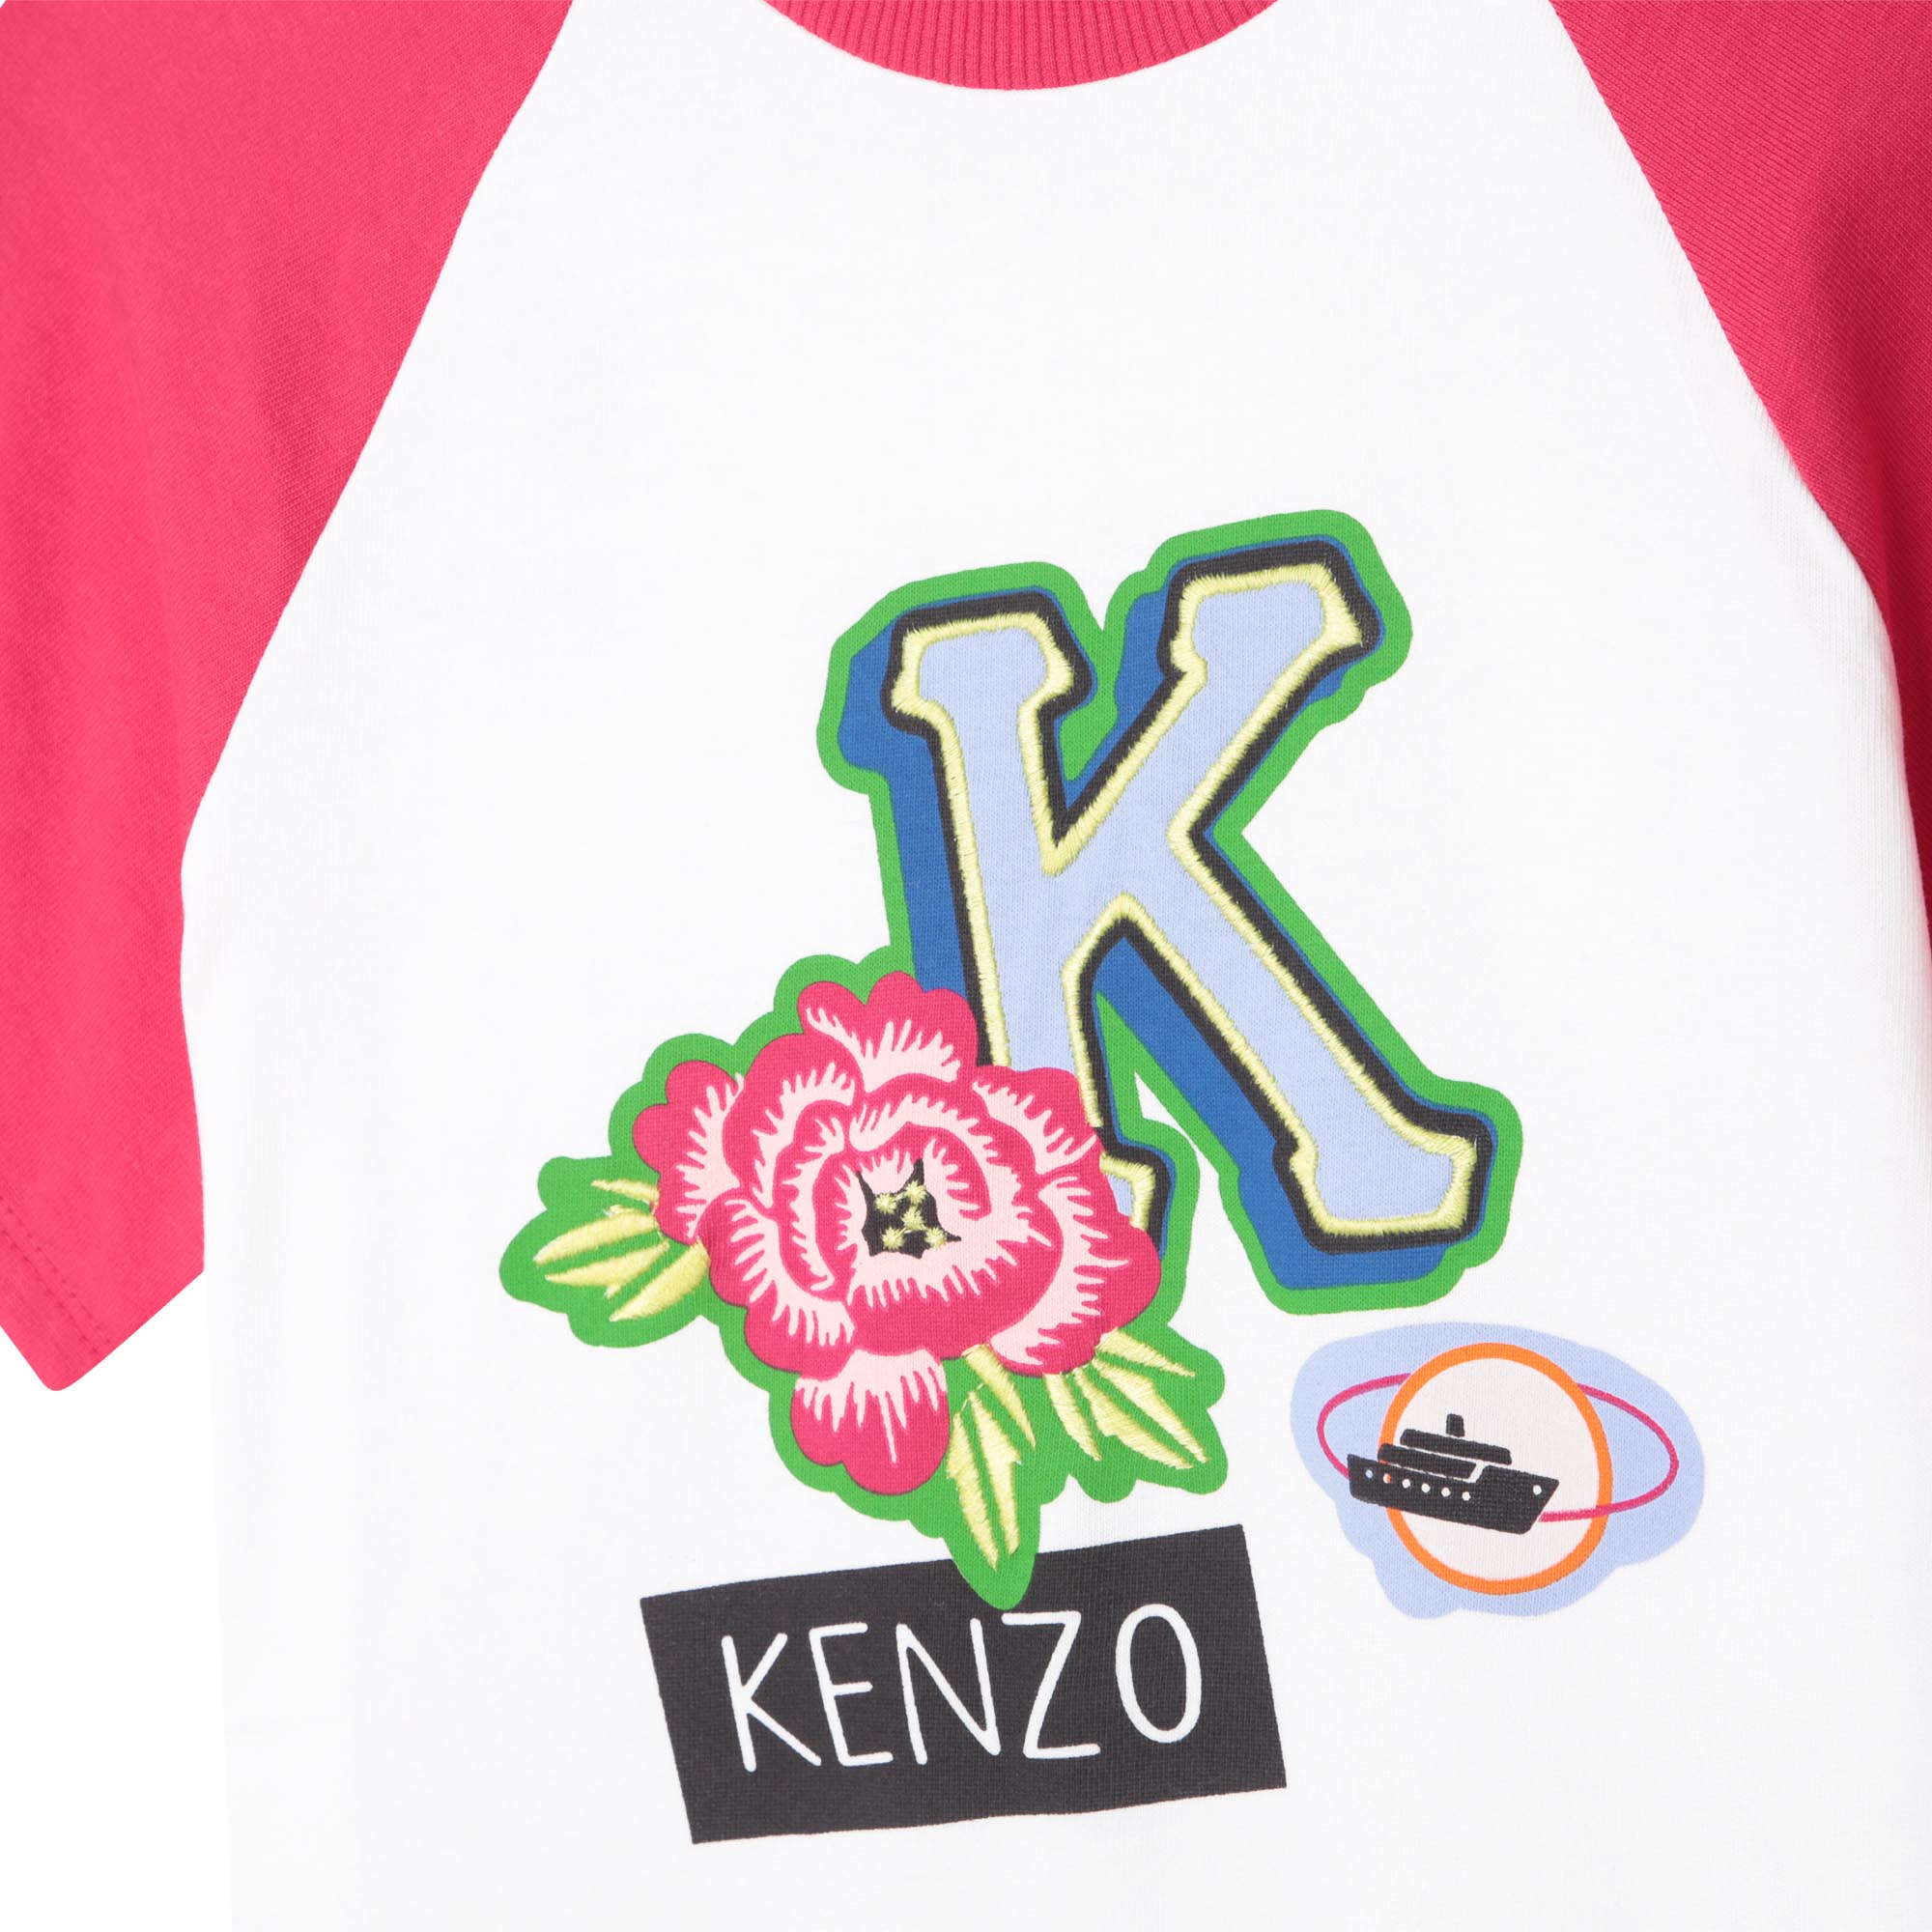 DRESS KENZO KIDS for GIRL